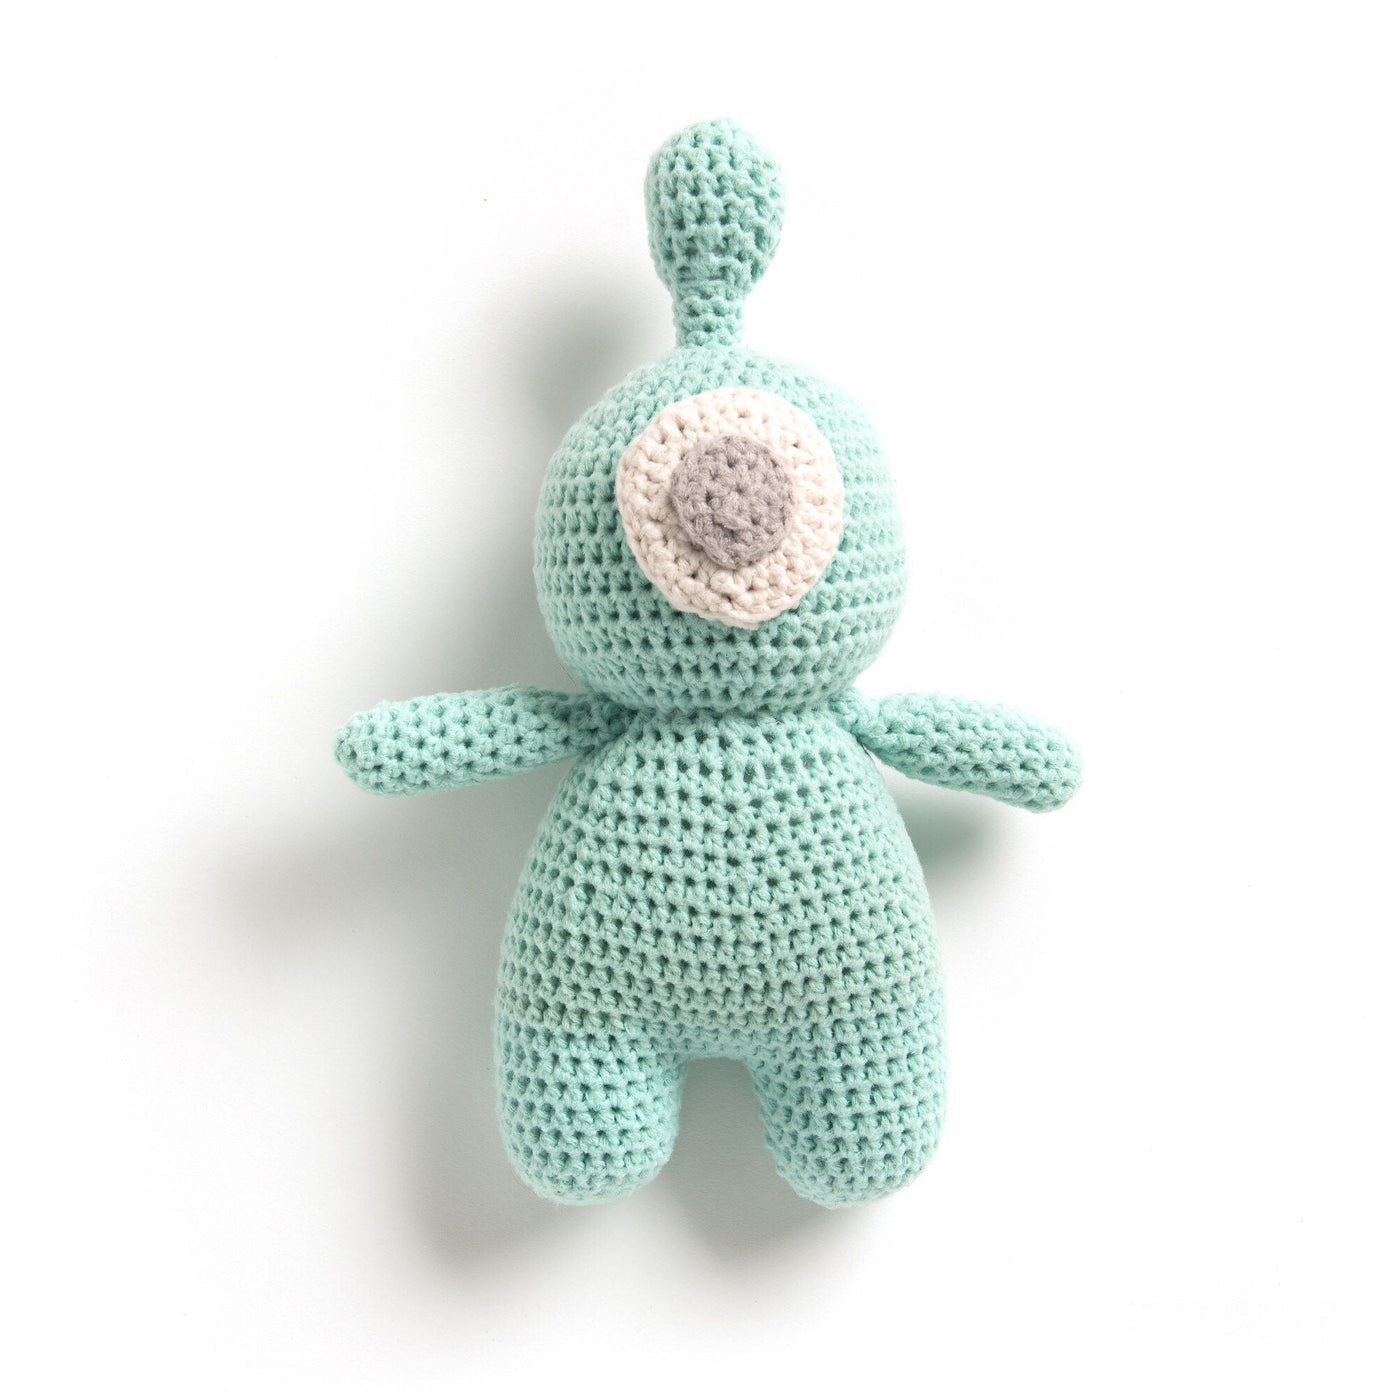 CROCHET PATTERN DOWNLOAD - Bernat Crochet Bleep Blorp Toy